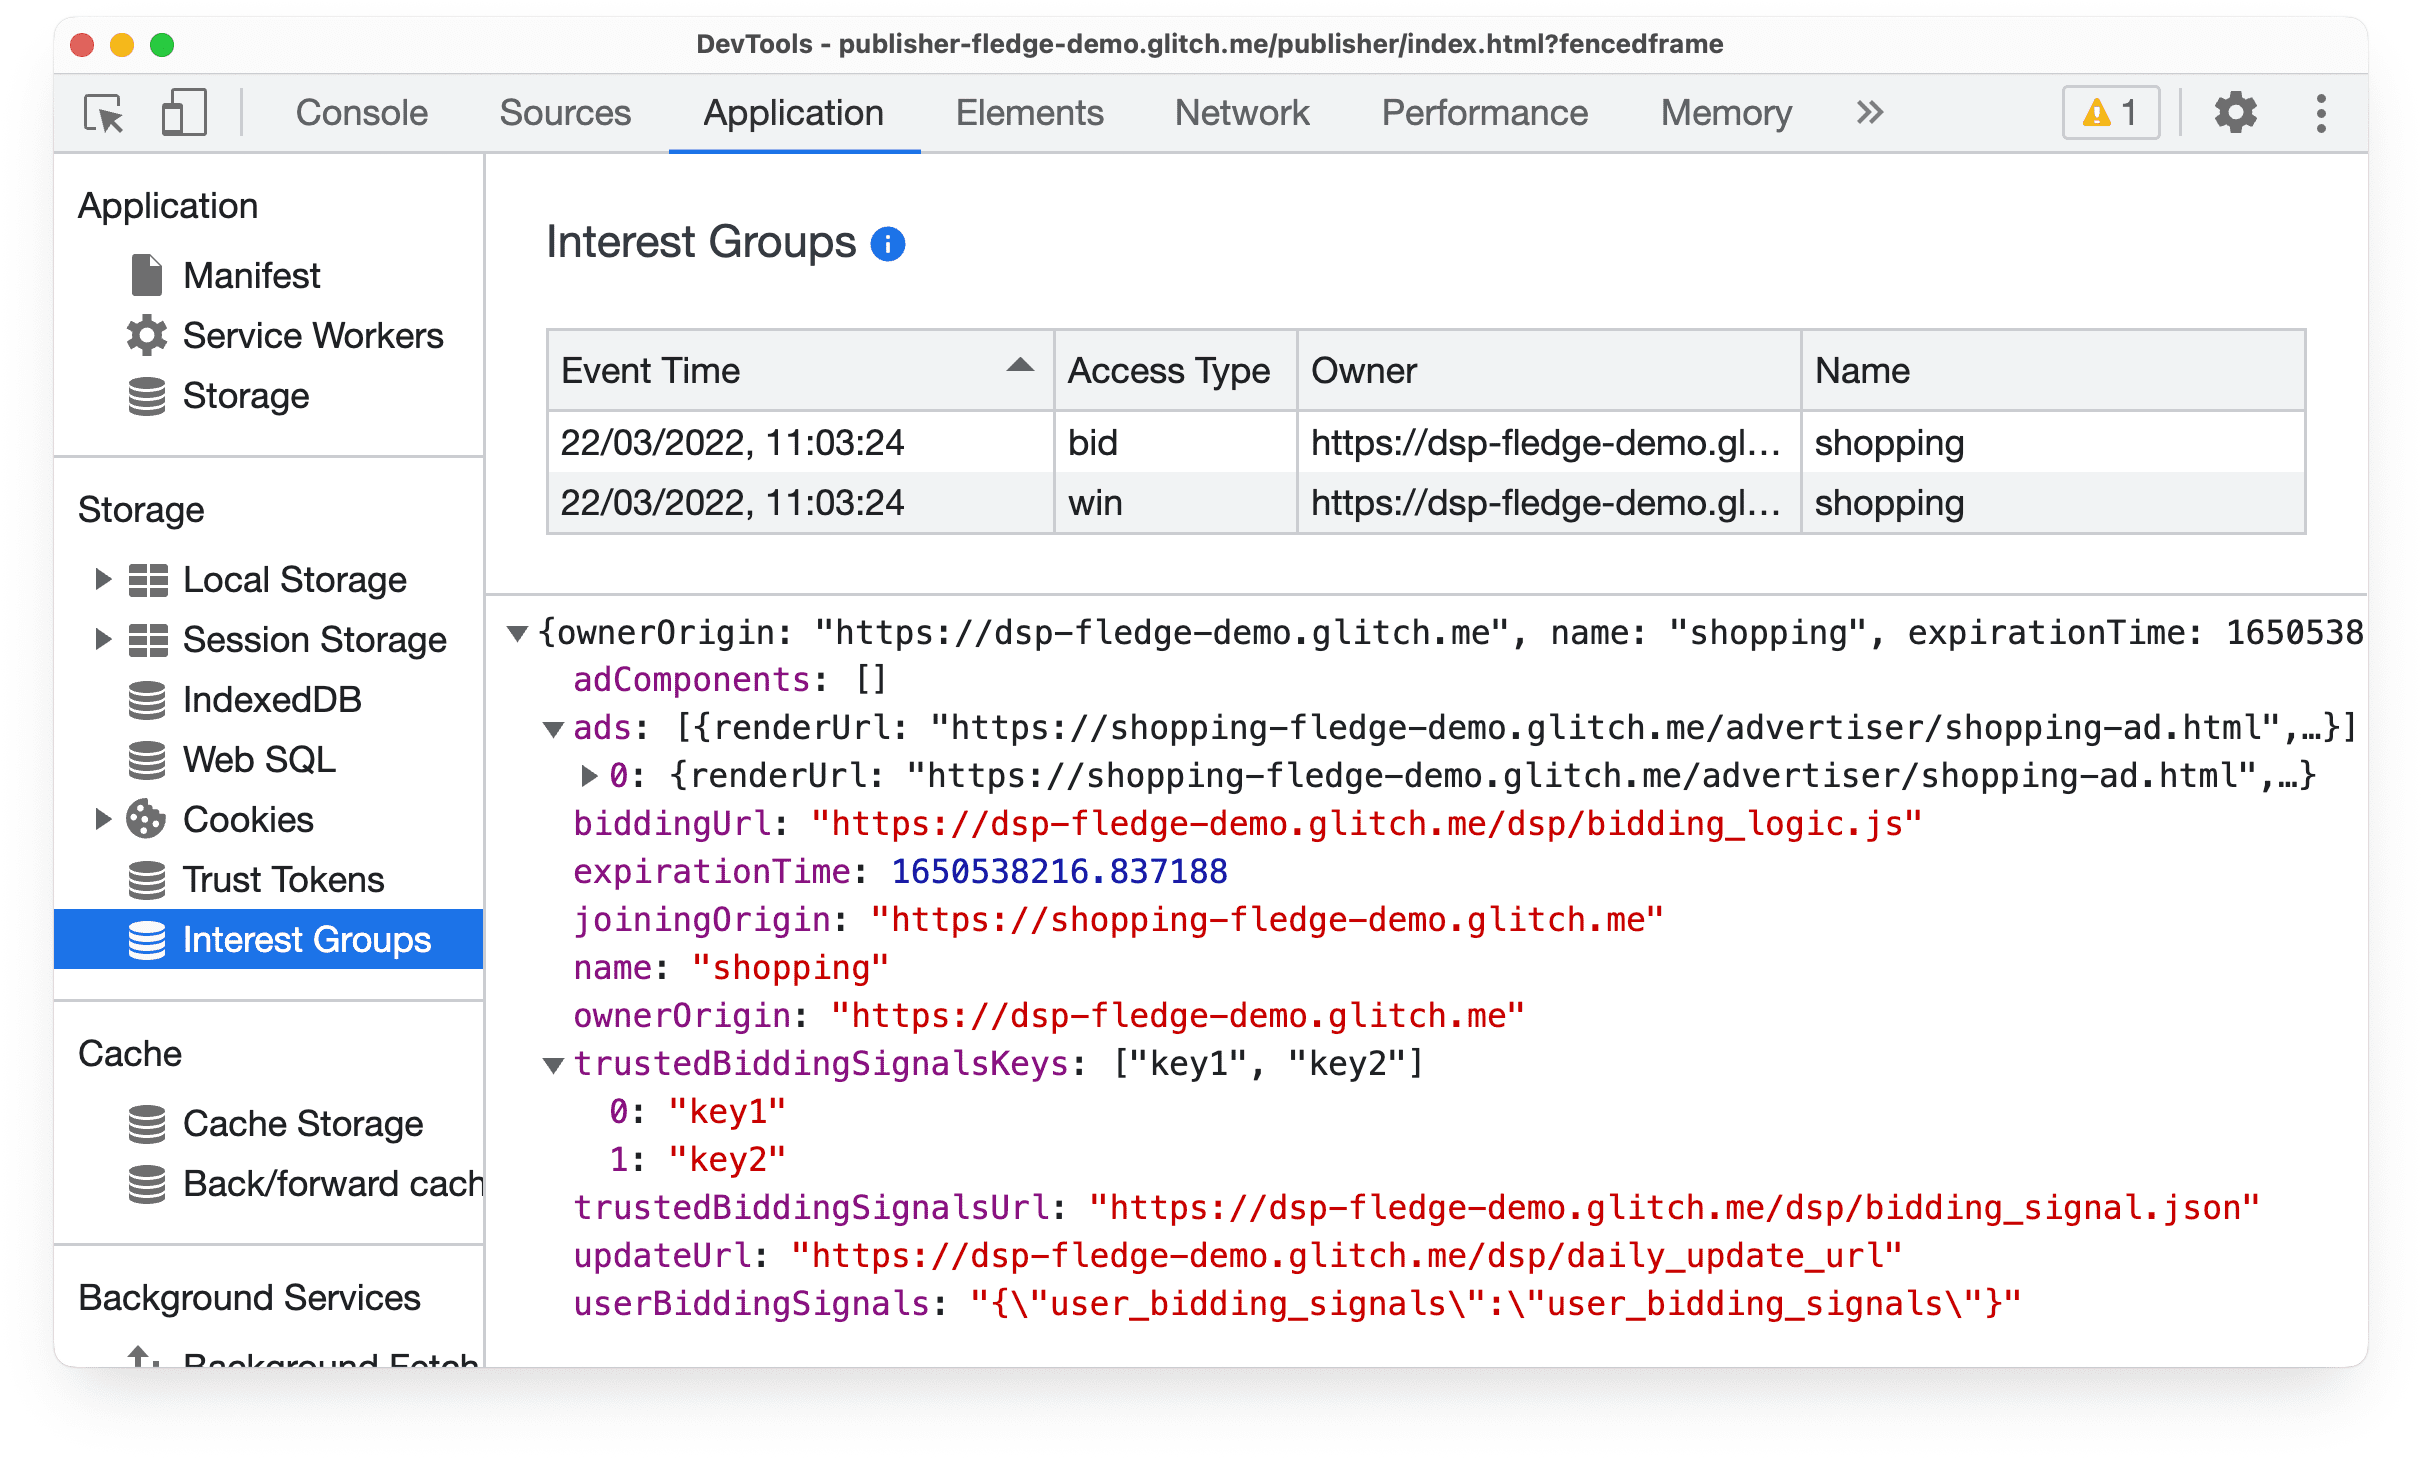 Chrome Canary の DevTools の [Application] パネル。Protected Audience のオークション入札と落札イベントに関する情報が表示されている。